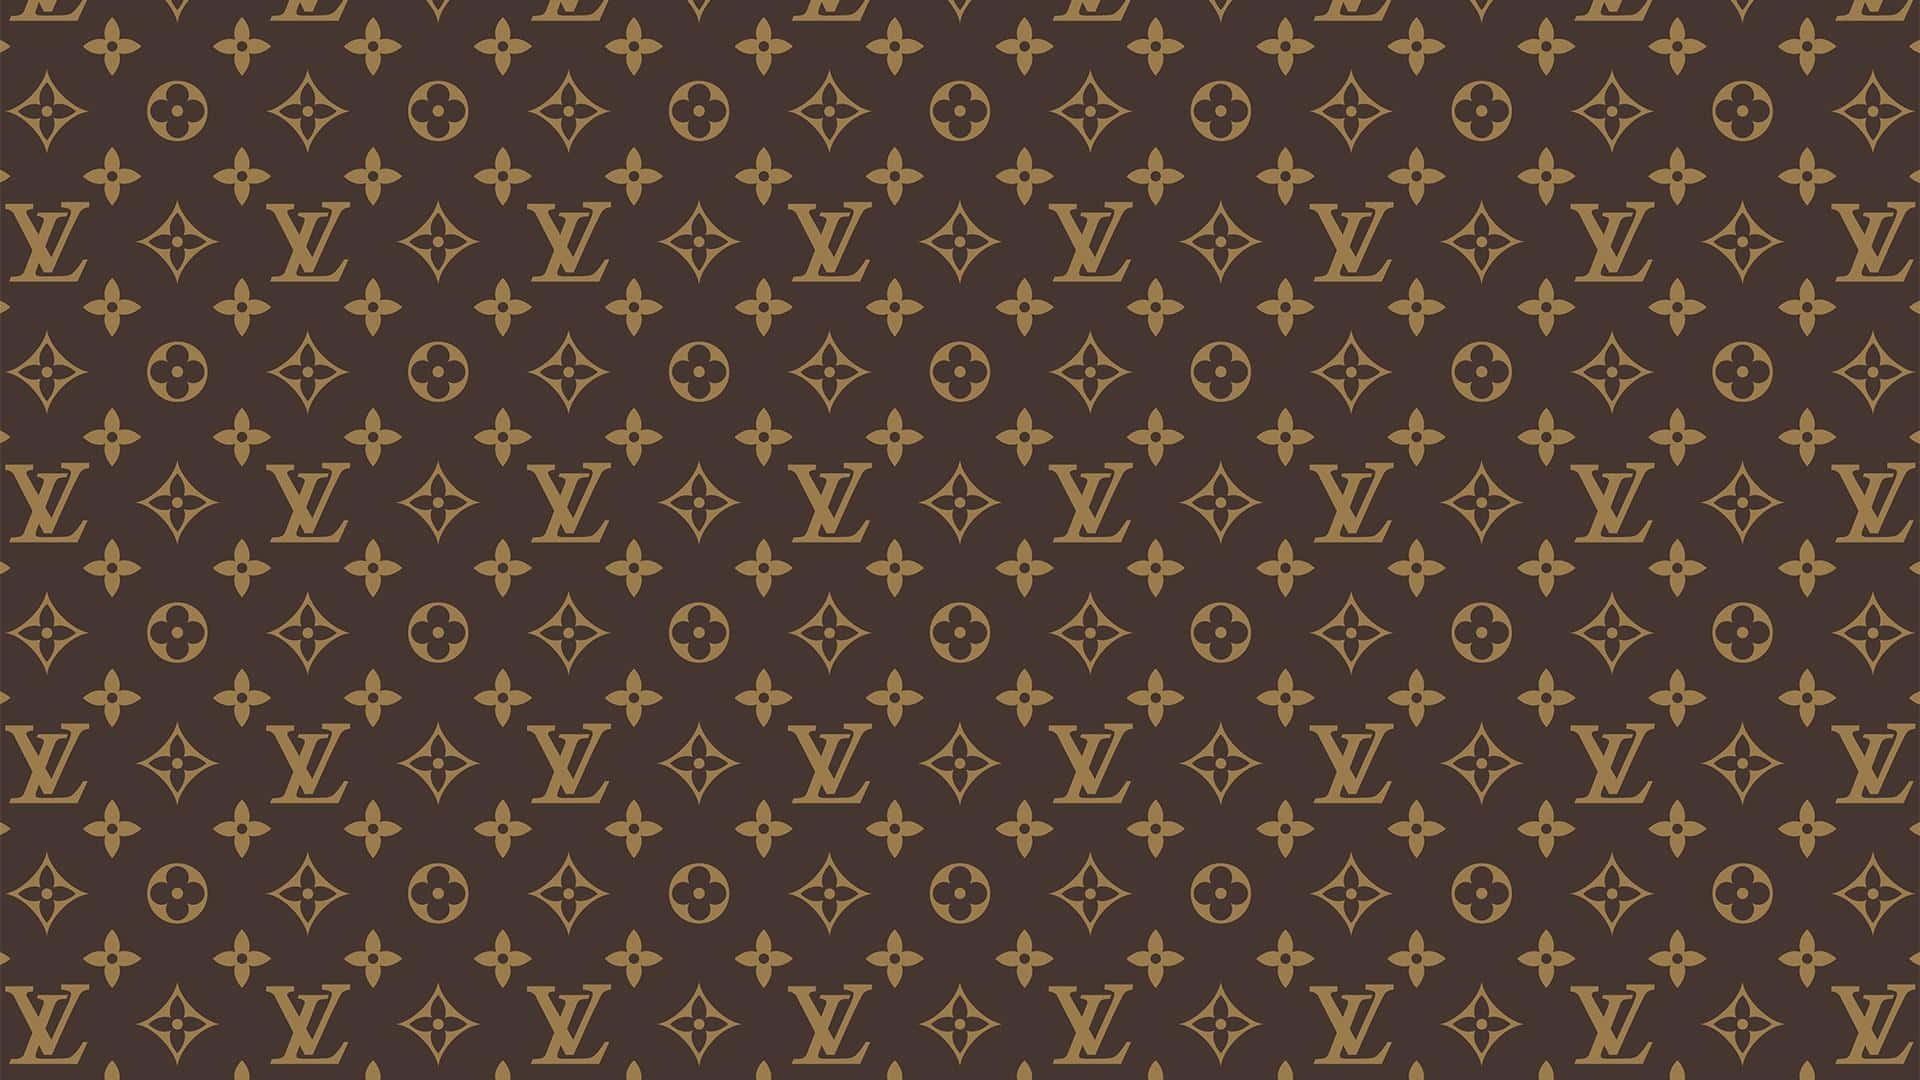 Patrónde Monograma De Louis Vuitton En Marrón Y Dorado Fondo de pantalla